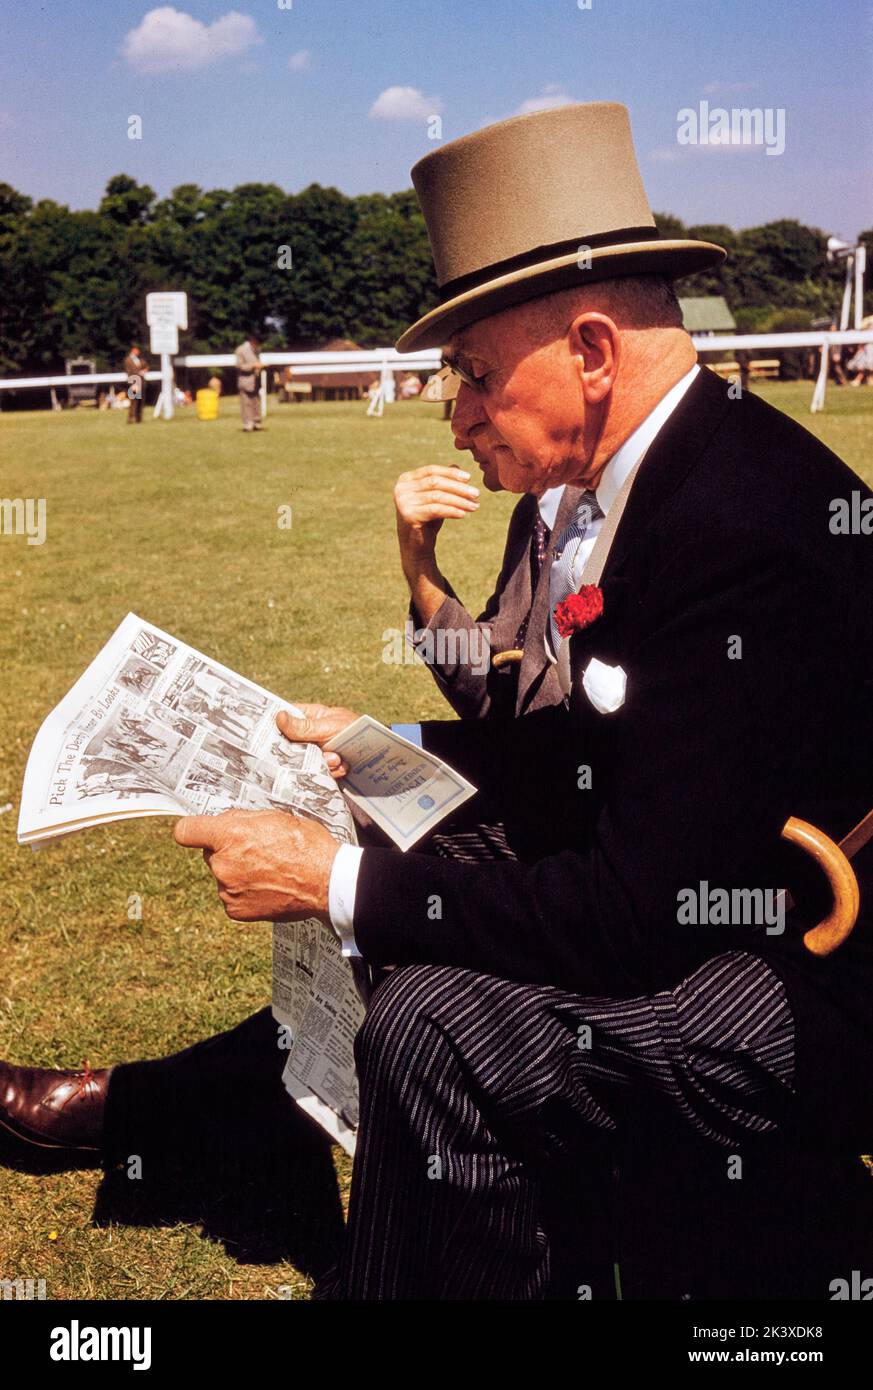 Uomo in formale Attrire leggendo giornale, mentre frequentano English Derby, Epsom Downs Racecourse, Epsom, Surrey, Inghilterra, UK, toni Frissell Collection, 3 giugno 1959 Foto Stock